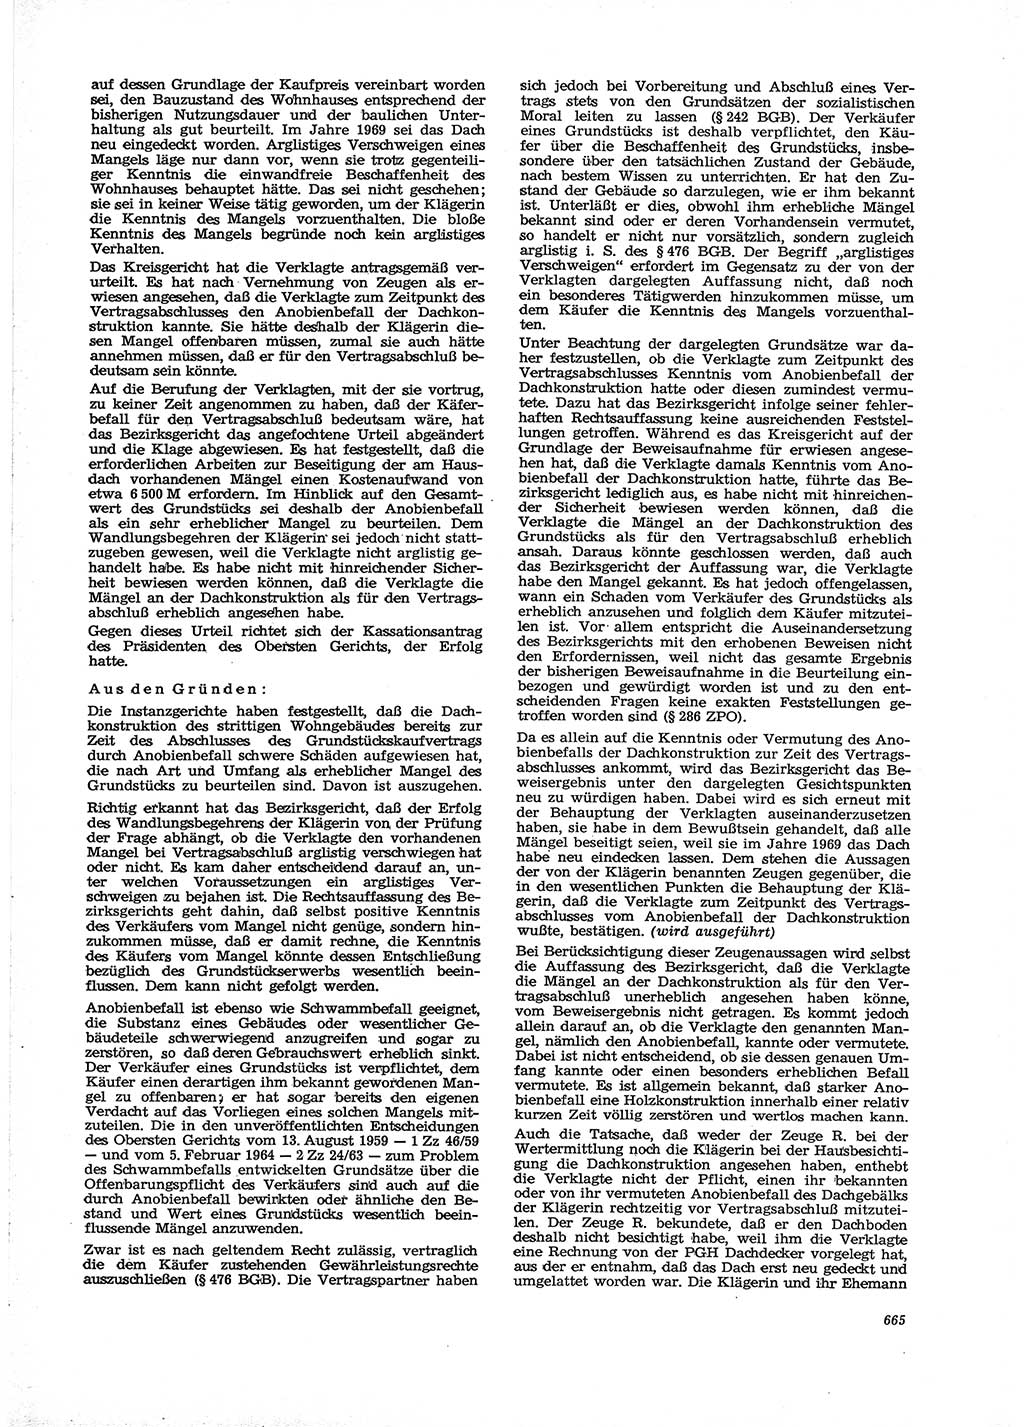 Neue Justiz (NJ), Zeitschrift für Recht und Rechtswissenschaft [Deutsche Demokratische Republik (DDR)], 29. Jahrgang 1975, Seite 665 (NJ DDR 1975, S. 665)